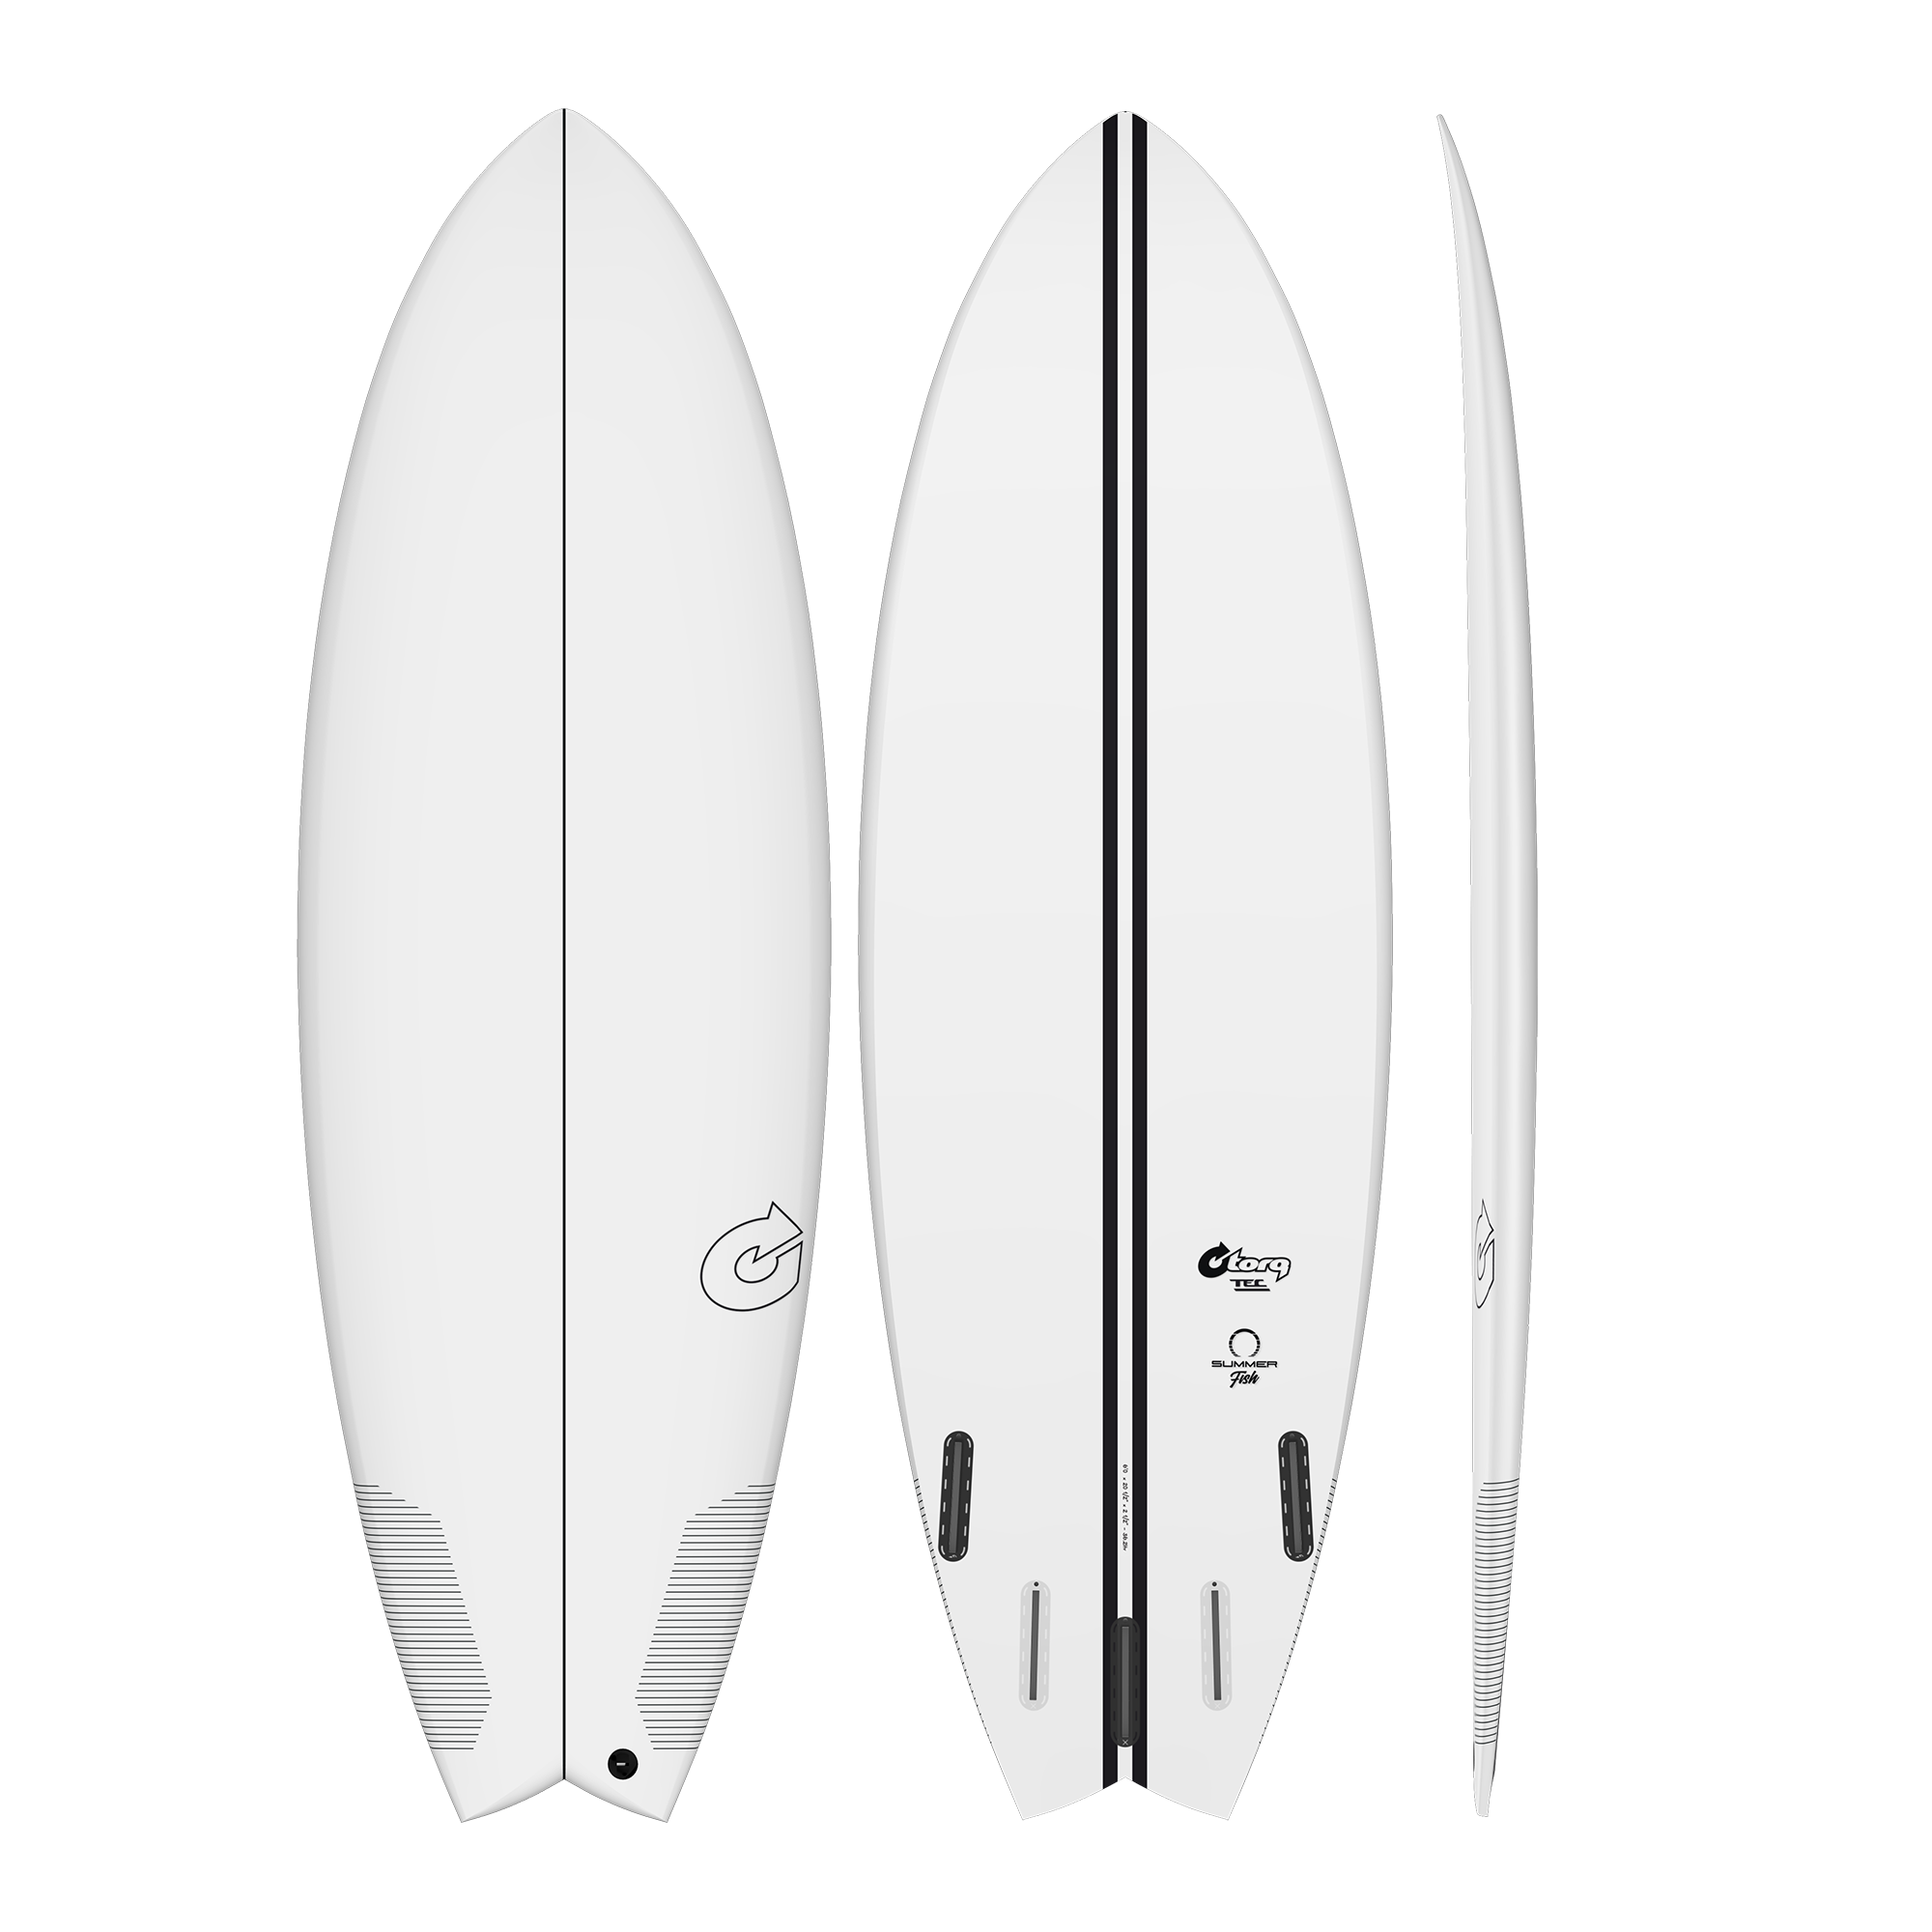 Torq TEC Summer Fish Epoxy Surfboard 5'10 x 21 3/4” x 5/8” 38 lt –  SURF WORLD SURF SHOP